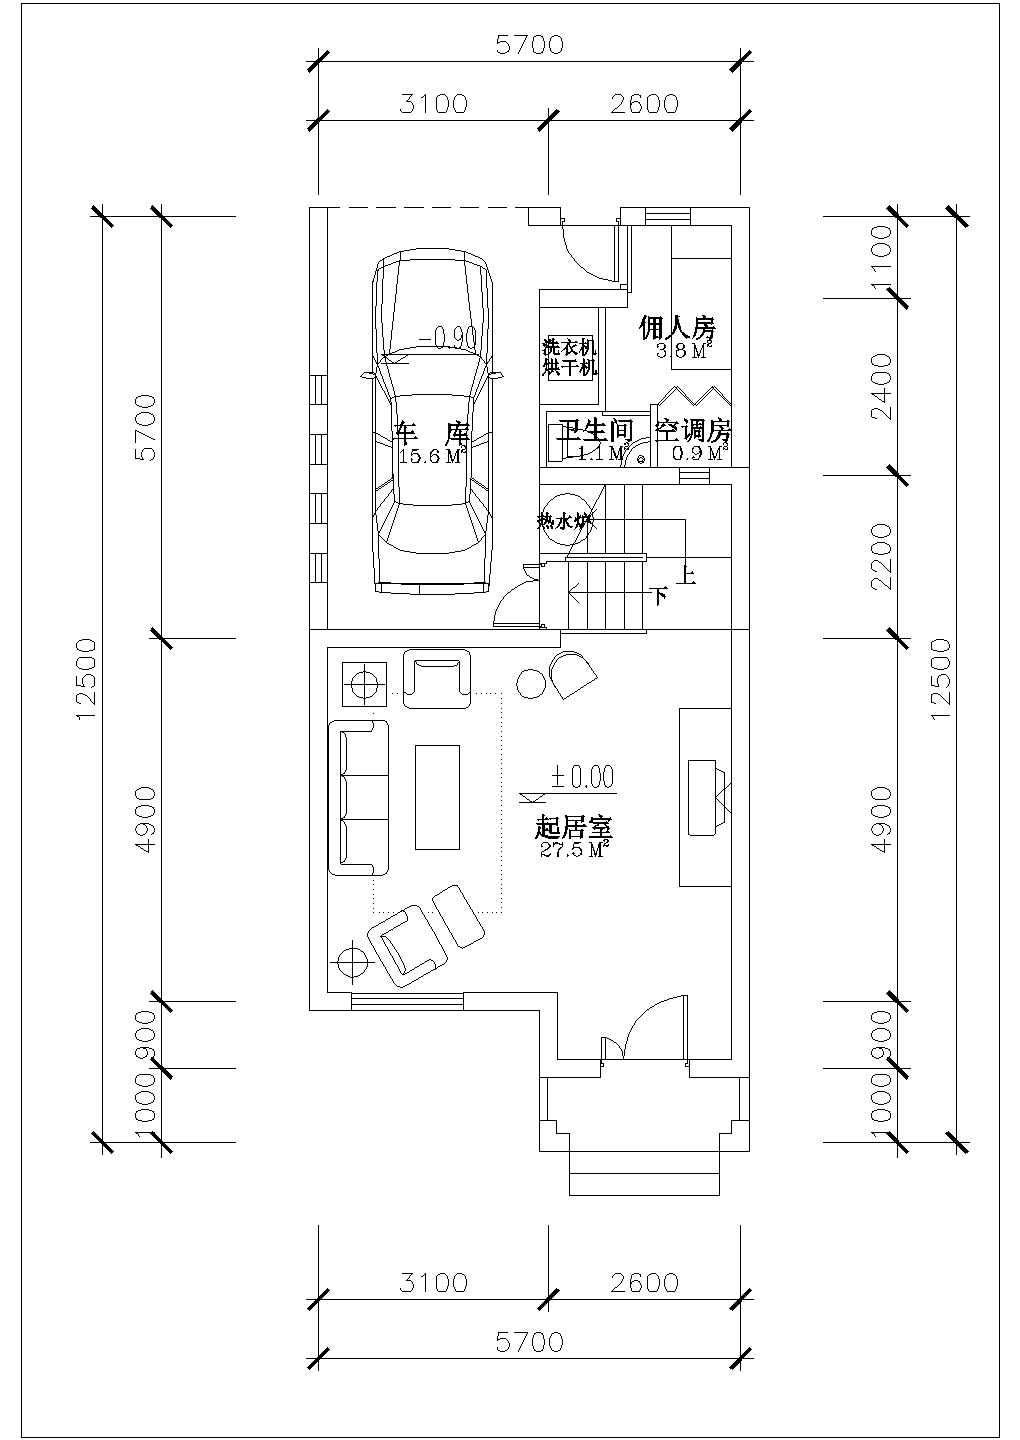 【江苏】某地夹层联排别墅建筑户型设计图